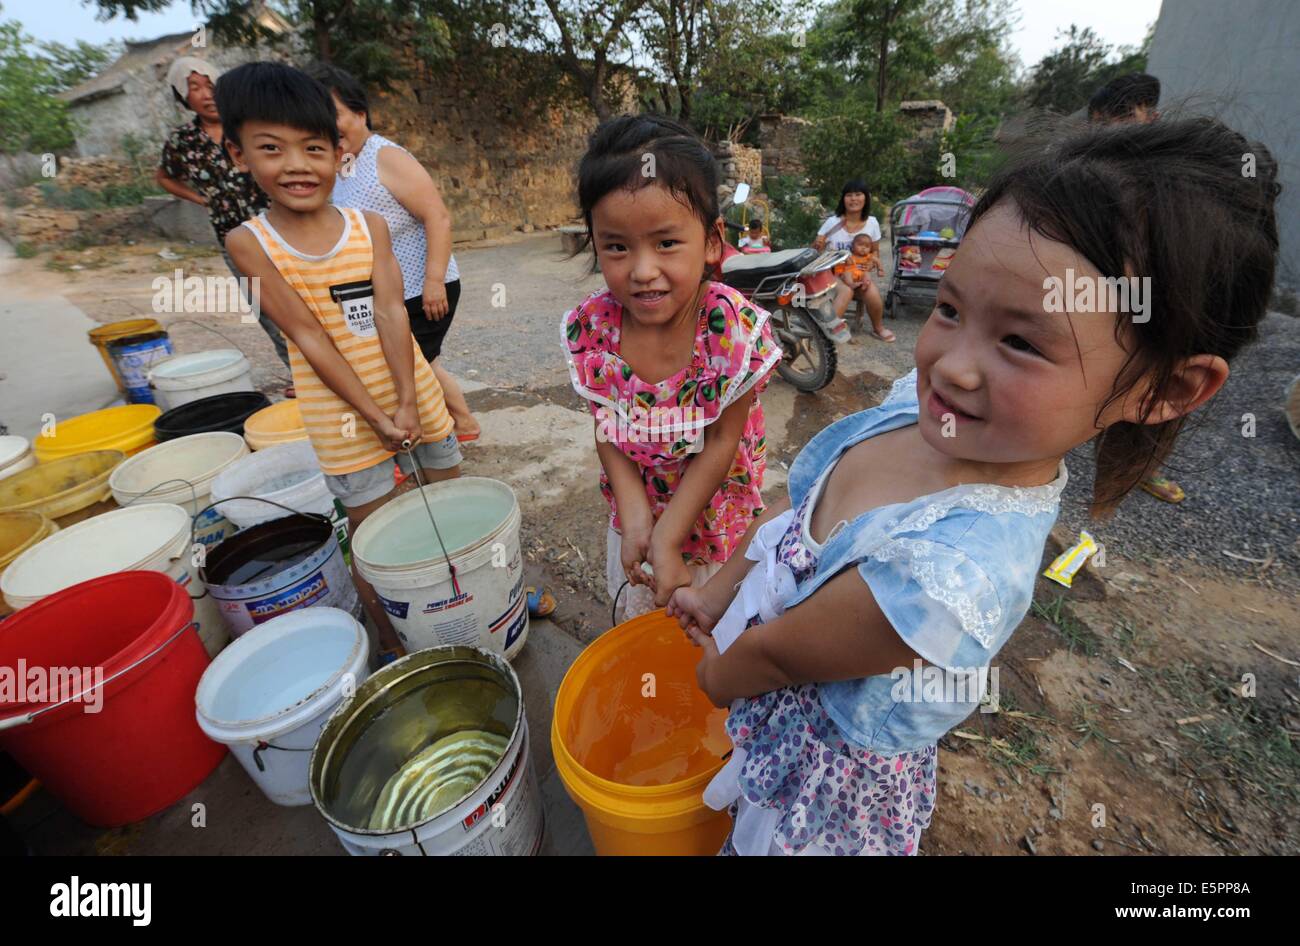 (140805)--ZHENGZHOU, 5. August 2014 (Xinhua)--Bürger erhalten Notfall Wasserversorgung in Duotou Dorf unter Qianjing Stadt von Jahren, Zentral-China Henan Provinz, 4. August 2014. Eine anhaltende Dürre hat die Wasserversorgung in vielen Teilen der Henan, glühend, 2 Millionen Hektar Ackerland während berauben 740.000 Menschen und 100.000 Nutztiere von ausreichend Trinkwasser gefährdet. Zur Sicherung der Wasserversorgung sowie hinsichtlich um die Dürre zu erleichtern, werden Anstrengungen unternommen. (Xinhua/Zhu Xiang) (Lmm) Stockfoto